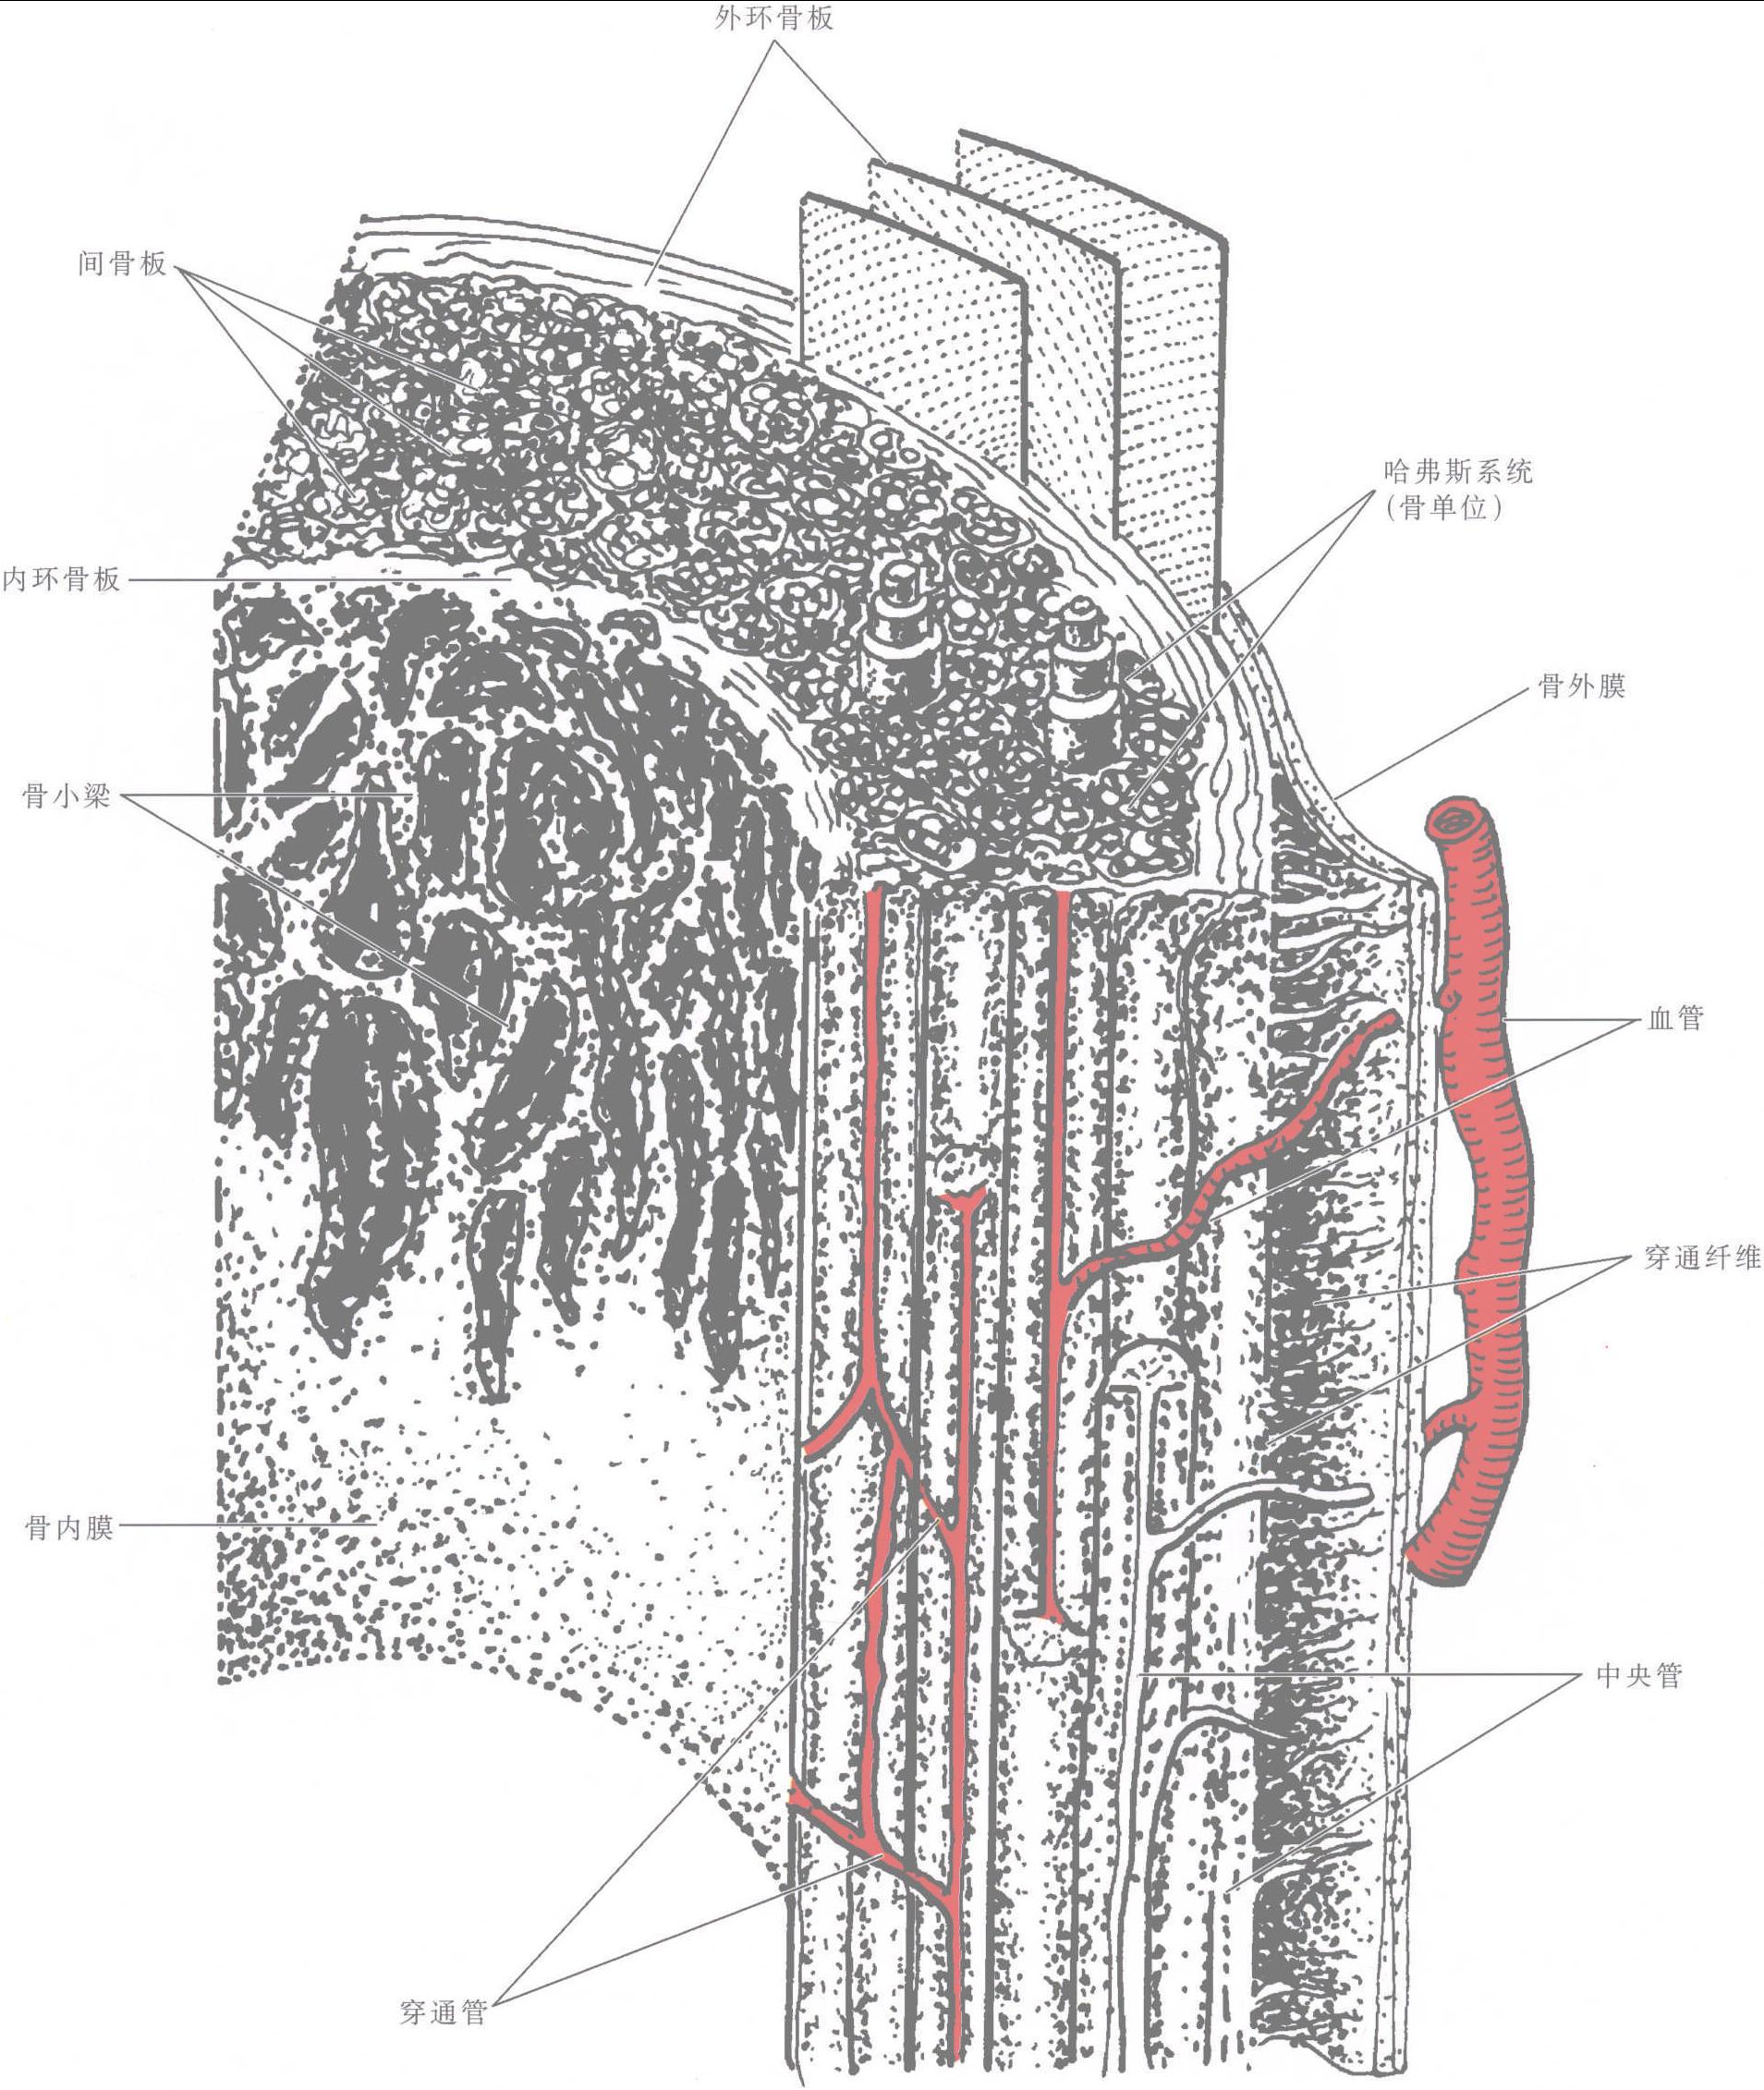 图1-1-4 长骨骨干结构模式图